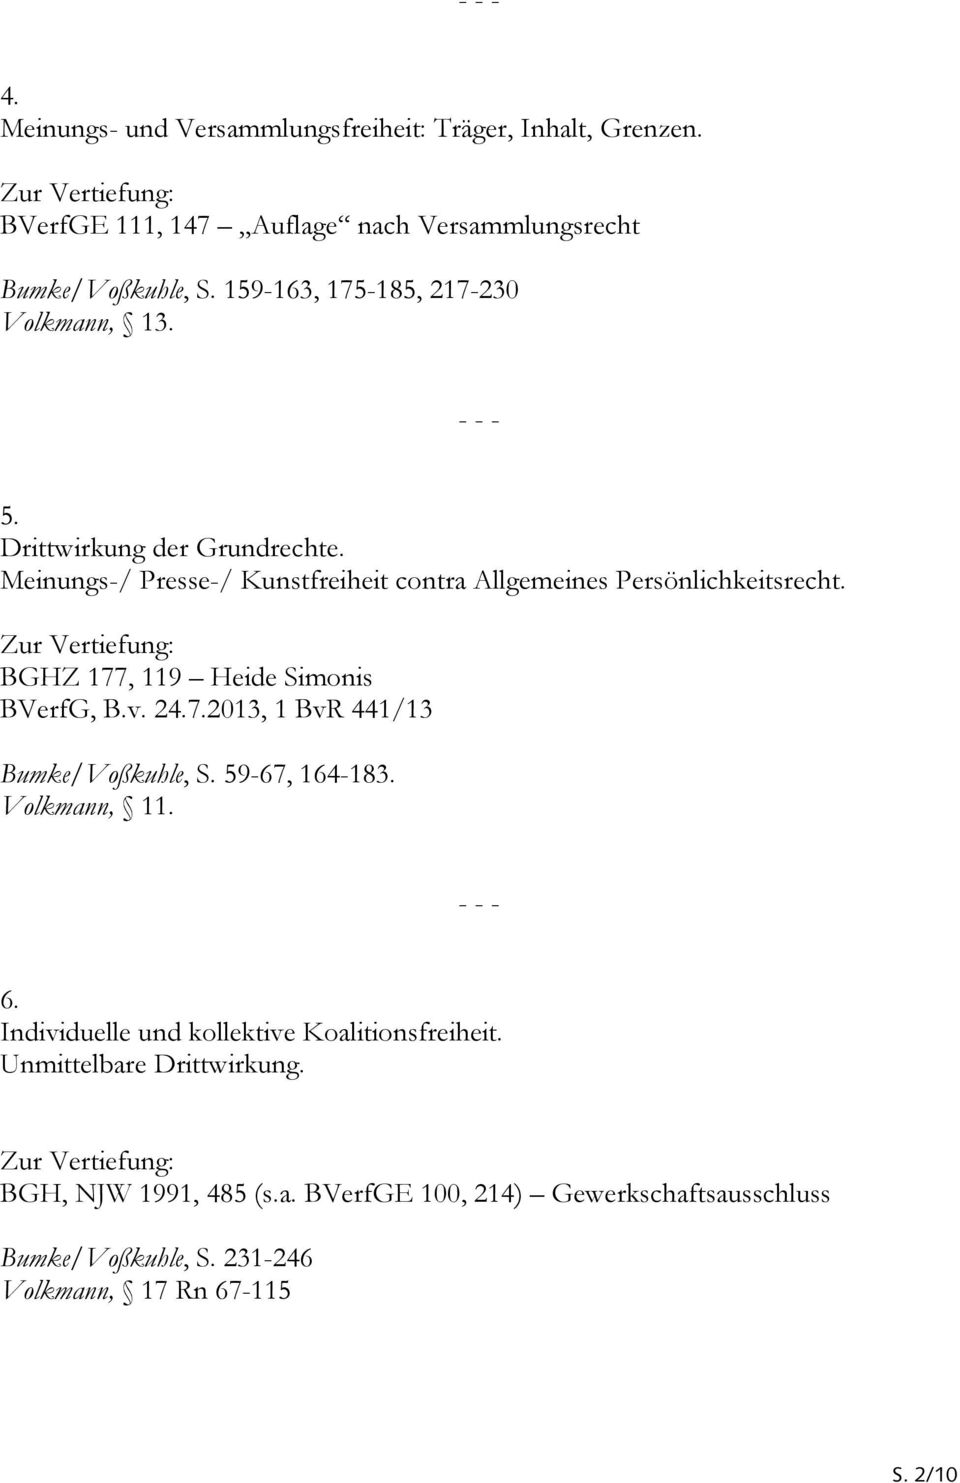 BGHZ 177, 119 Heide Simonis BVerfG, B.v. 24.7.2013, 1 BvR 441/13 Bumke/Voßkuhle, S. 59-67, 164-183. Volkmann, 11. 6.